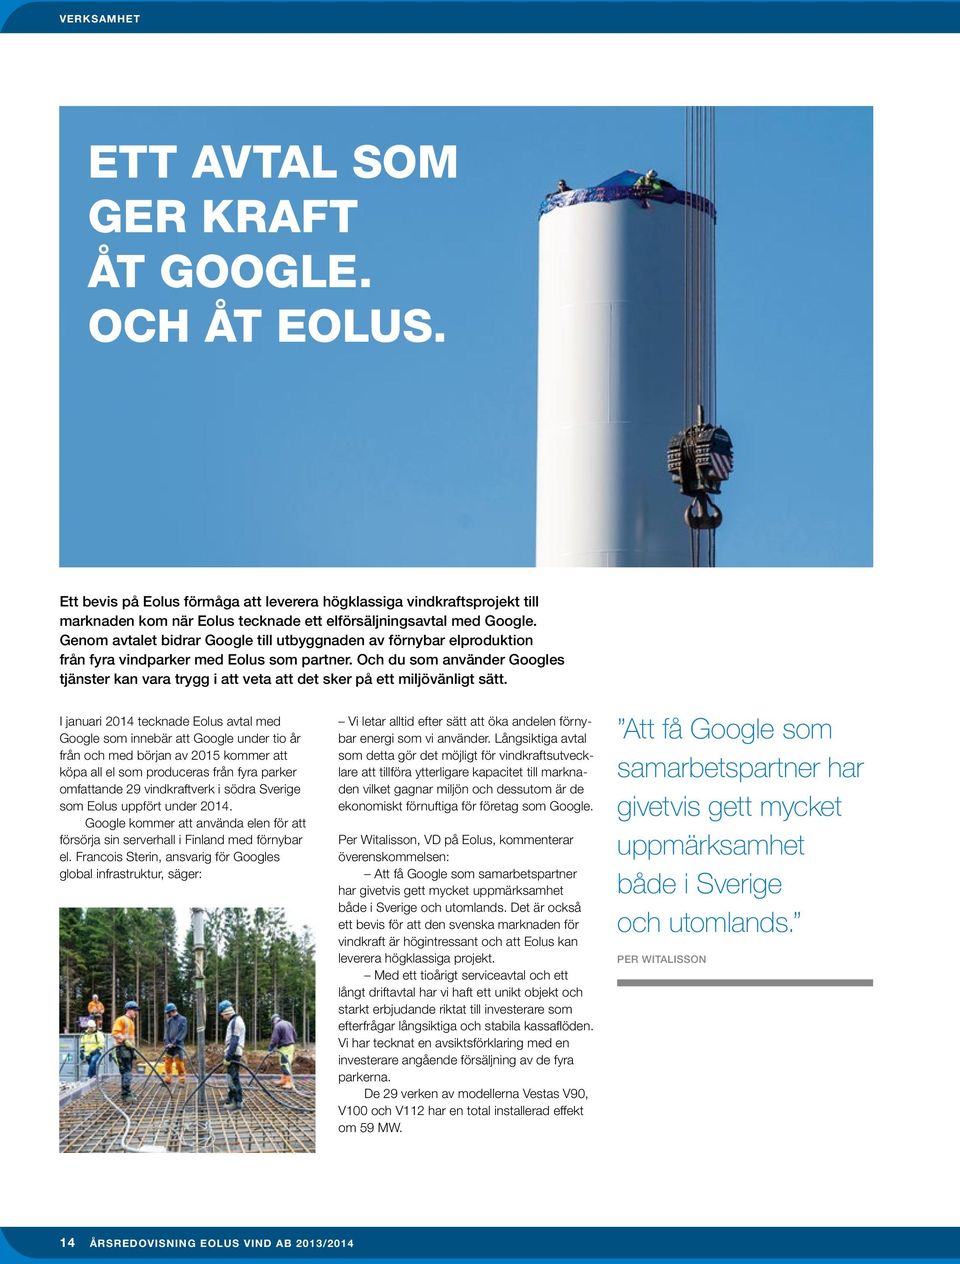 Genom avtalet bidrar Google till utbyggnaden av förnybar elproduktion från fyra vindparker med Eolus som partner.